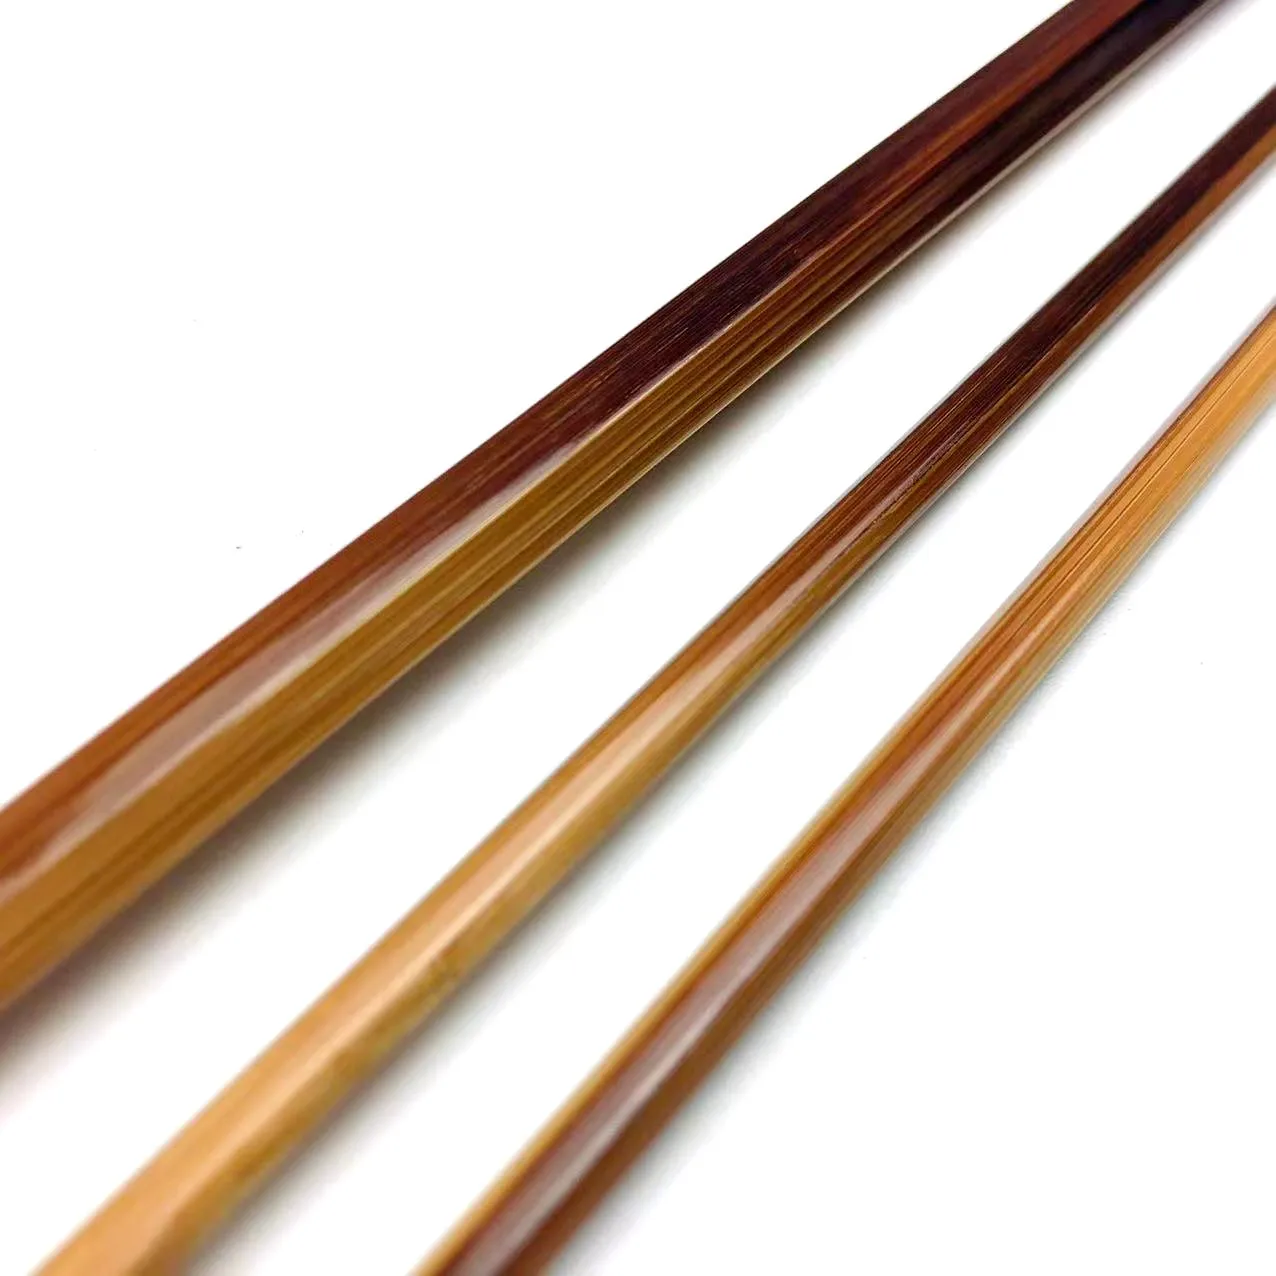 Cane / Flamed Bambus Fliegenruten Blank 7´6ft 2/2 3wt Thomas & Thomas Caenis Taper 